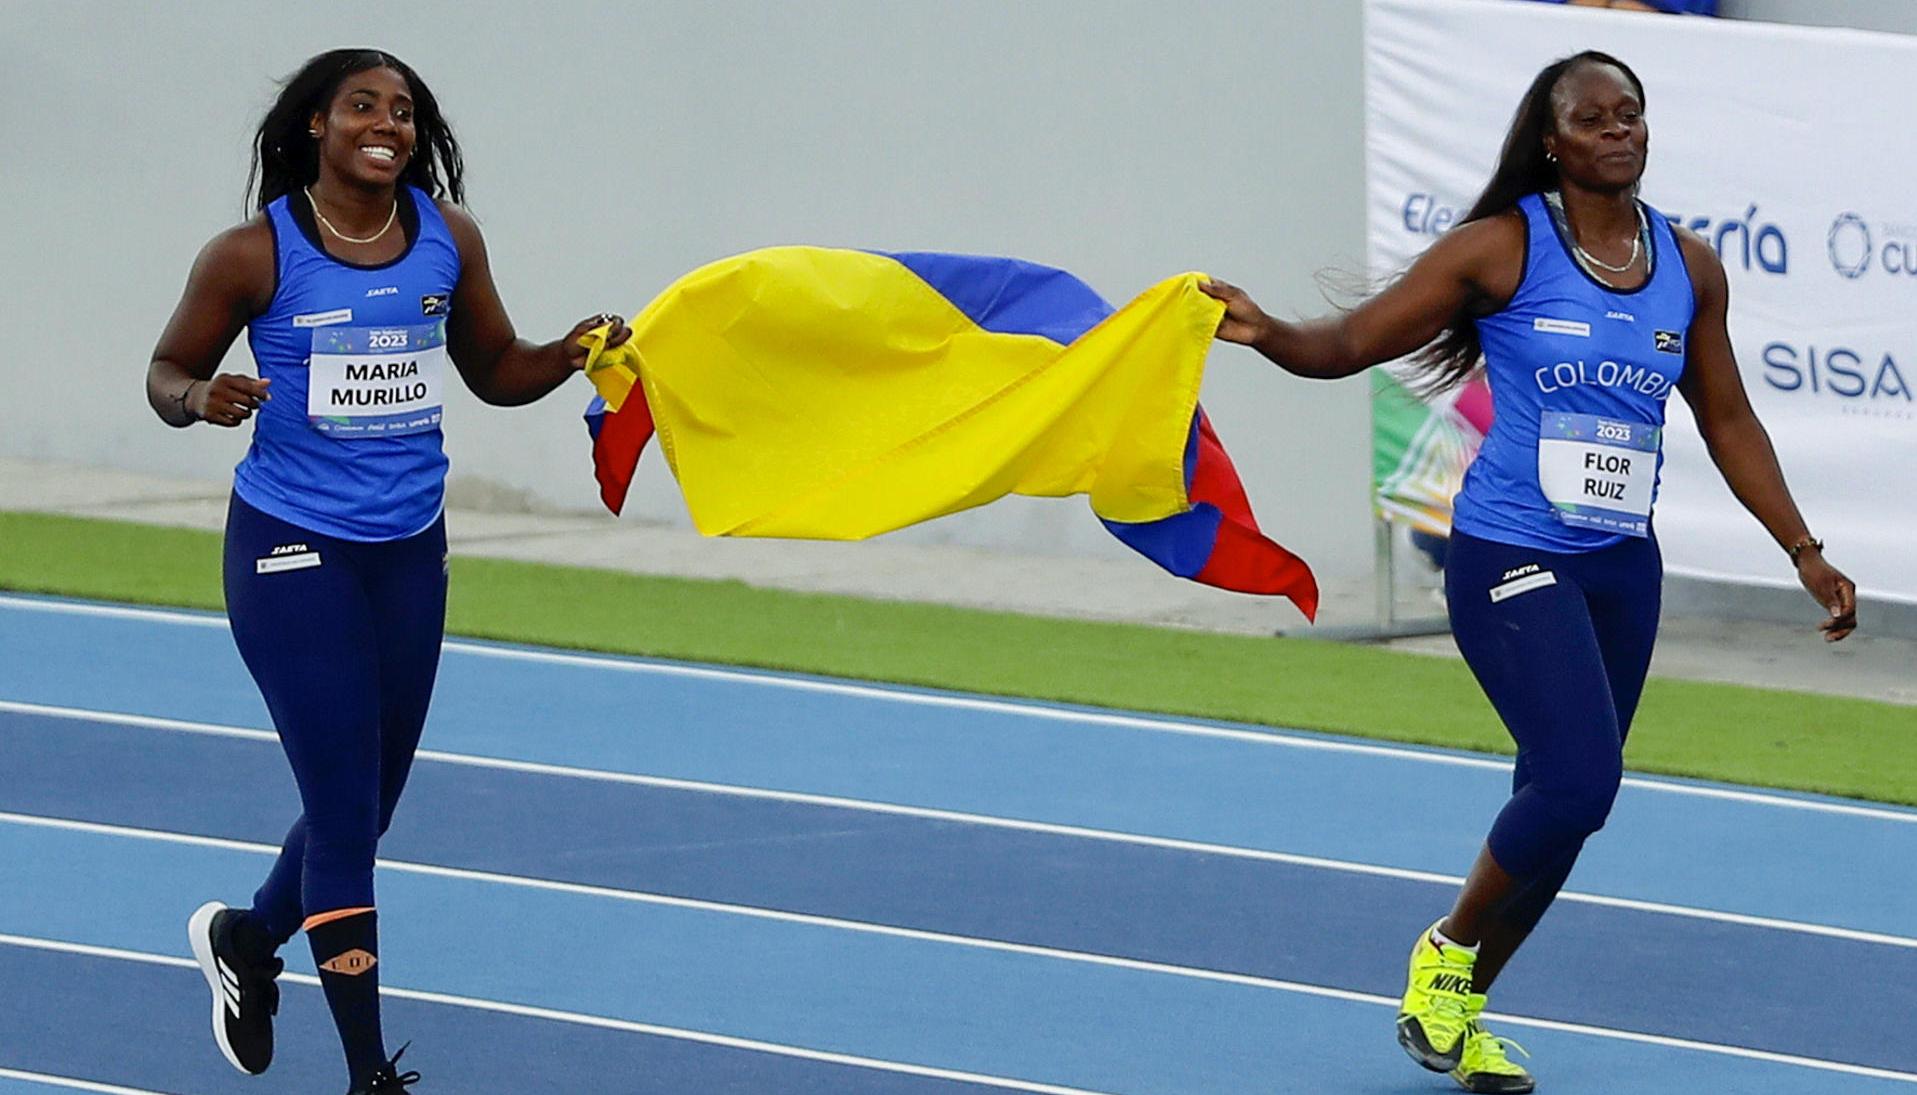 Atletas de jabalina colombianas lograron clasificarse a la final de la competencia en Mundial de Atletismo